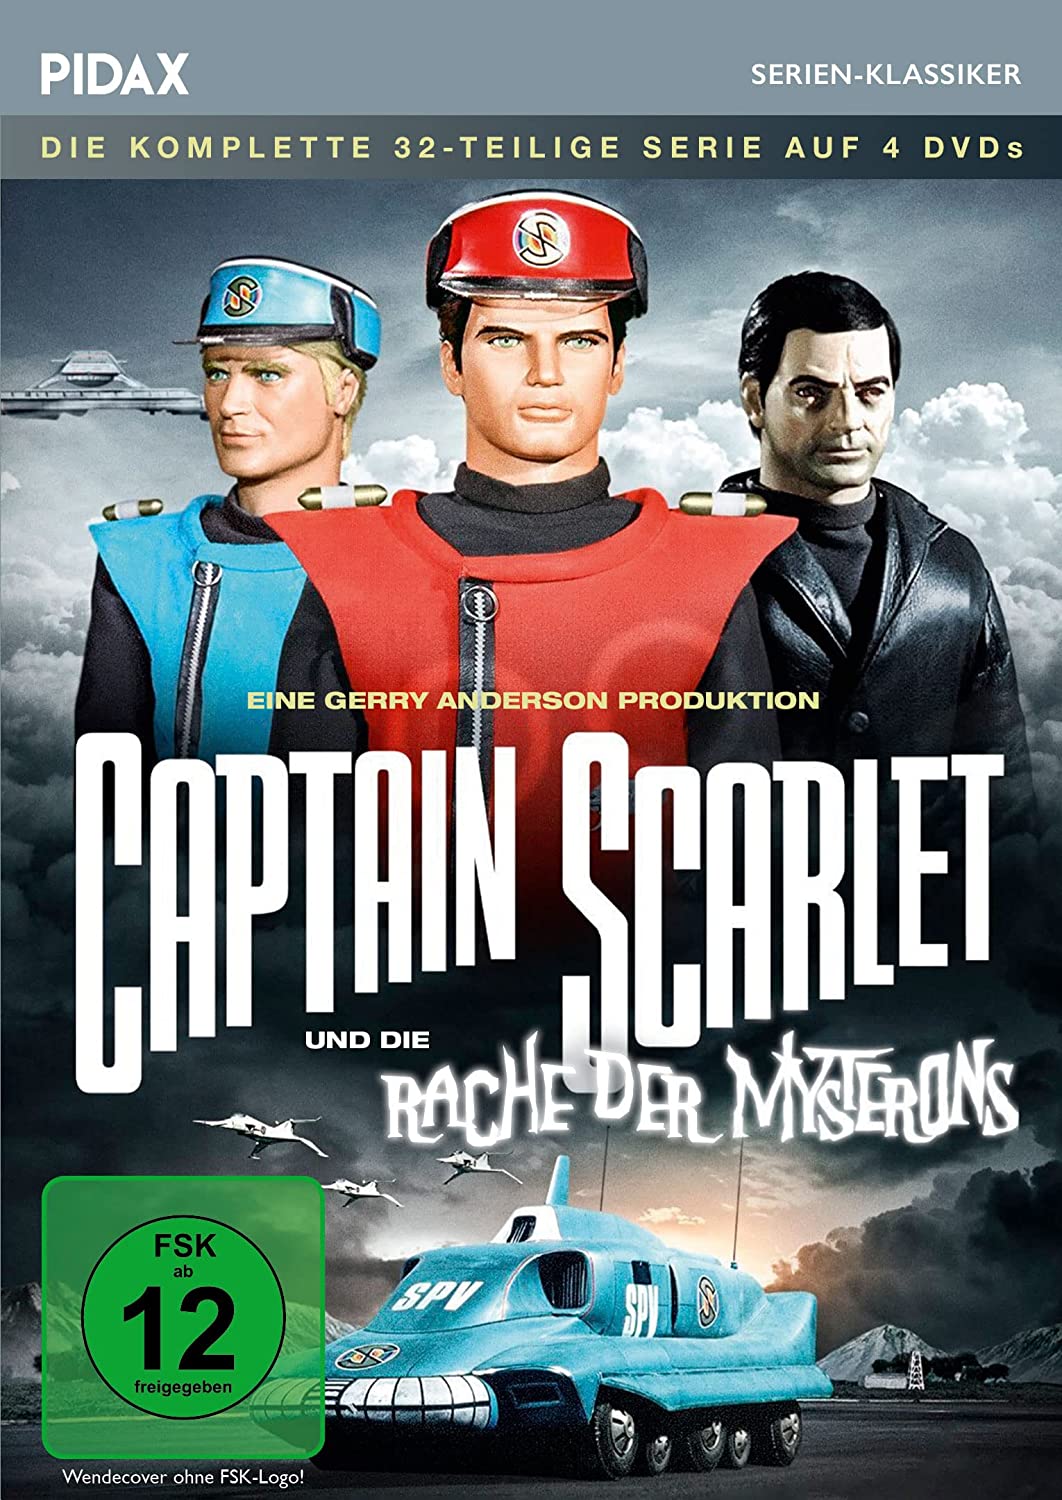 Captain Scarlet und die Rache der Mysterons - Komplettbox - 32 teilige Serie